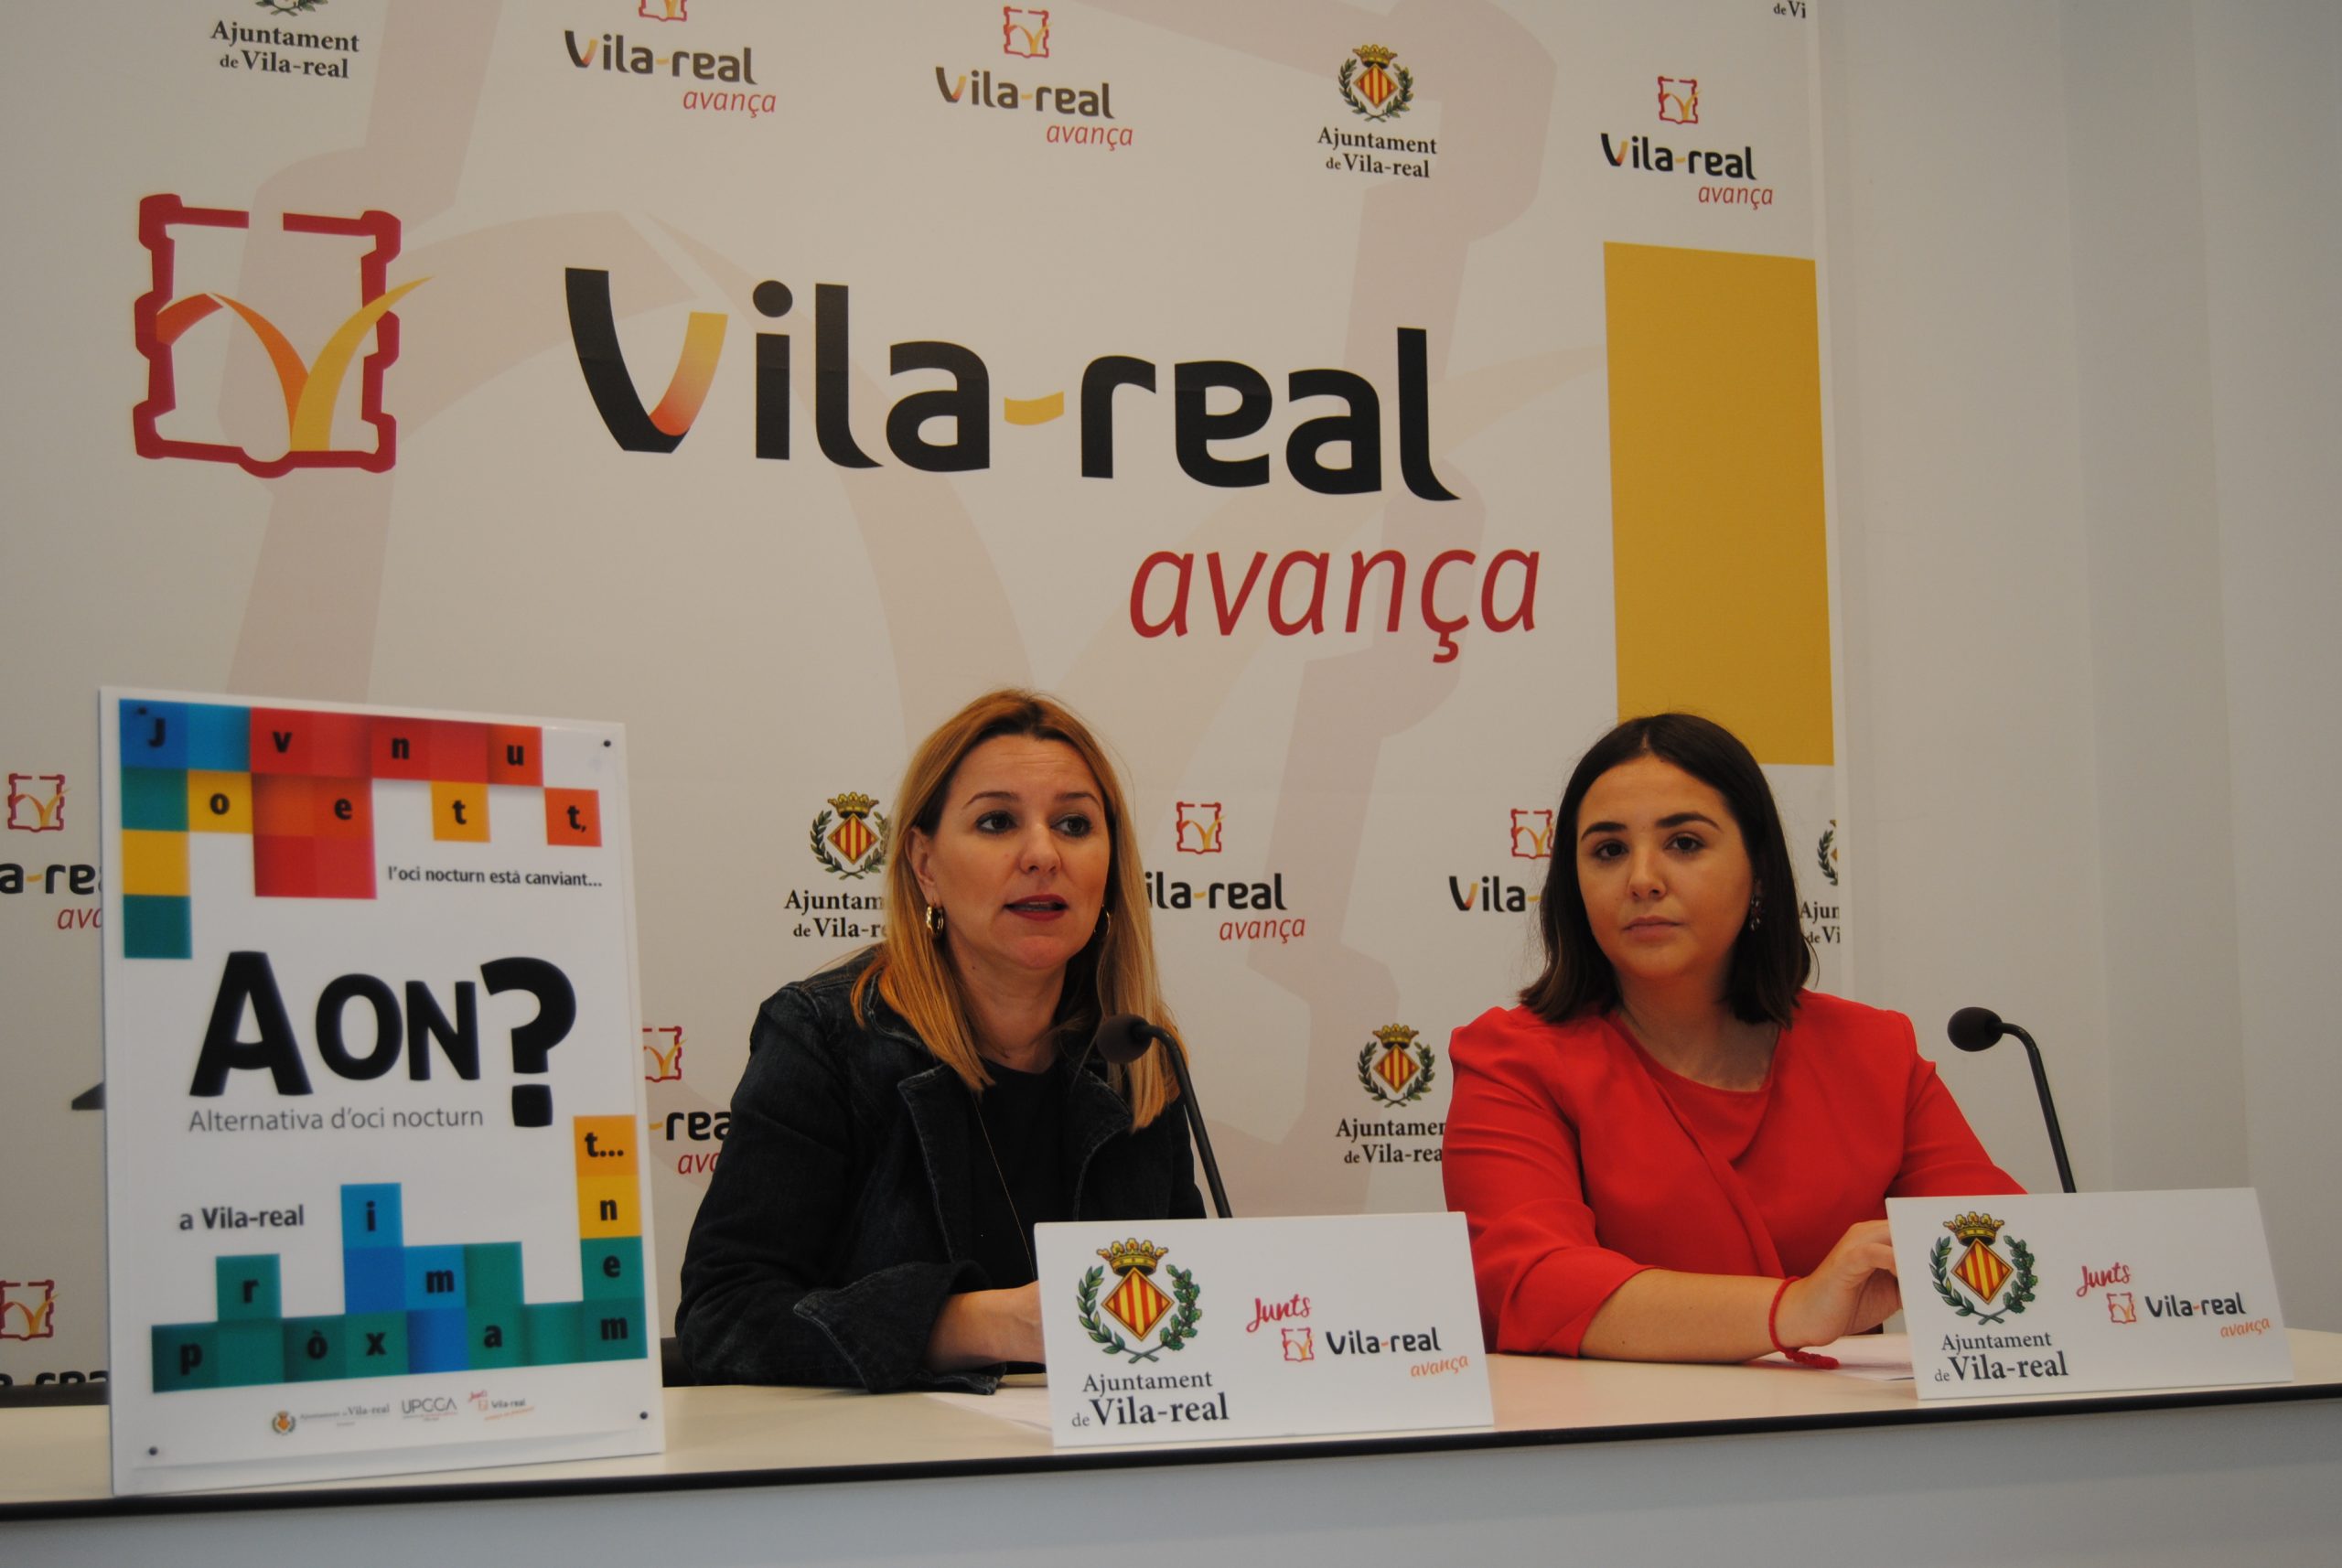 Vila-real lanza un proyecto piloto de ocio nocturno alternativo y saludable